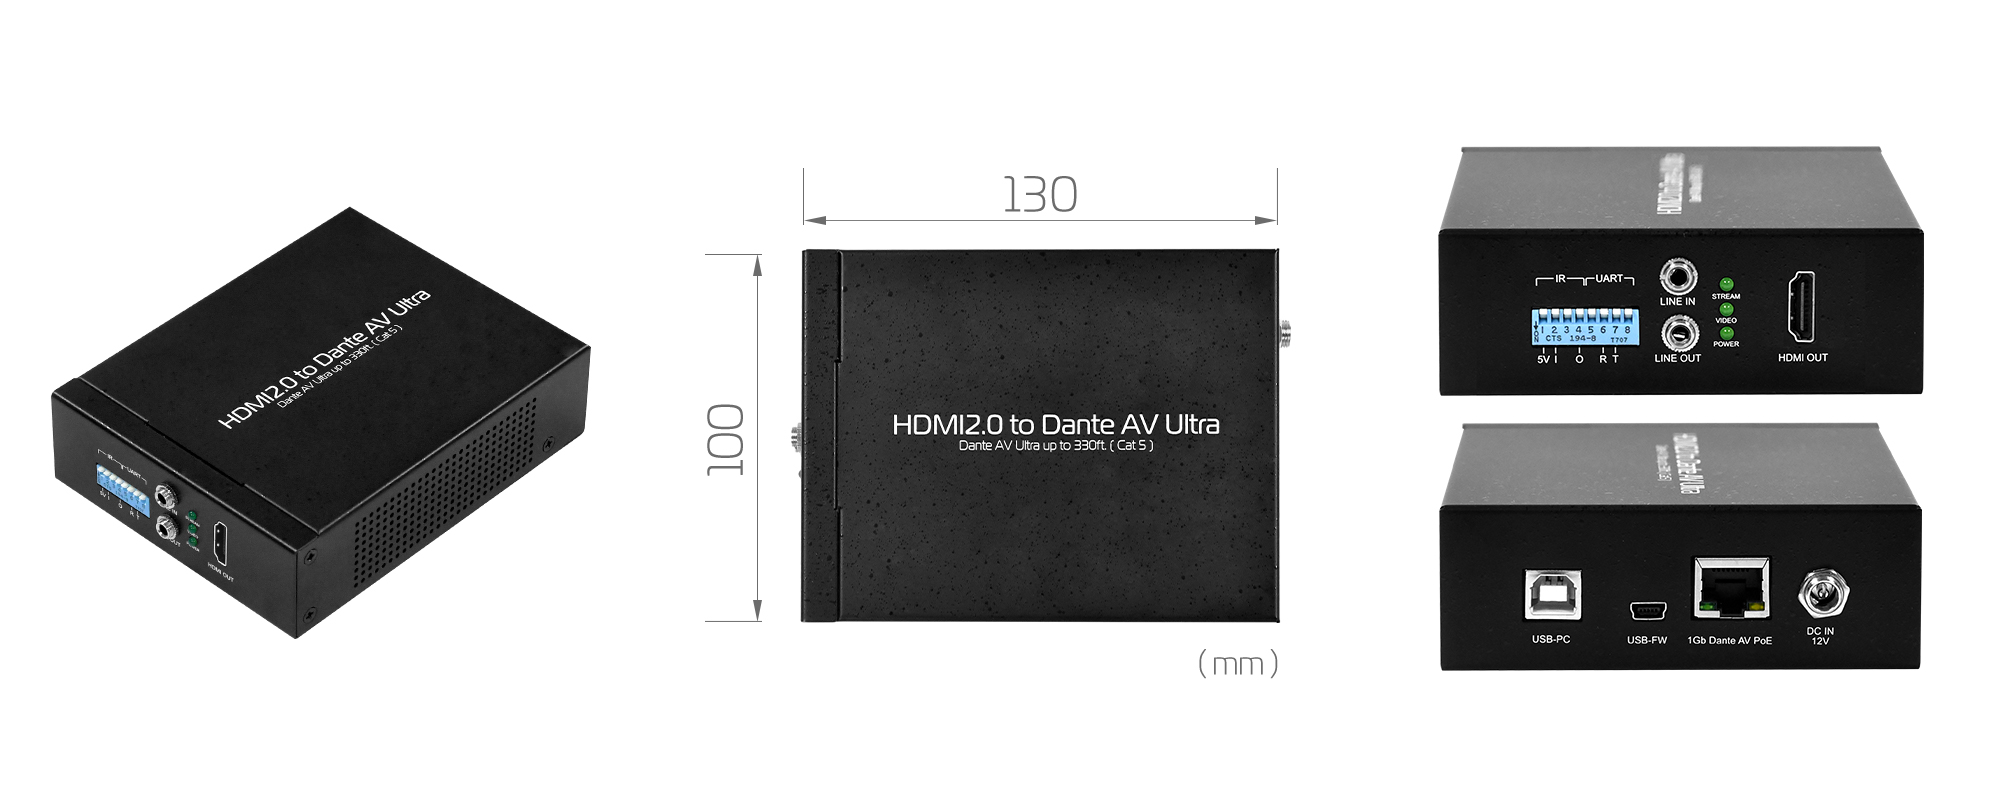 HDMI2.0 to Dante AV Ultra - transmitter